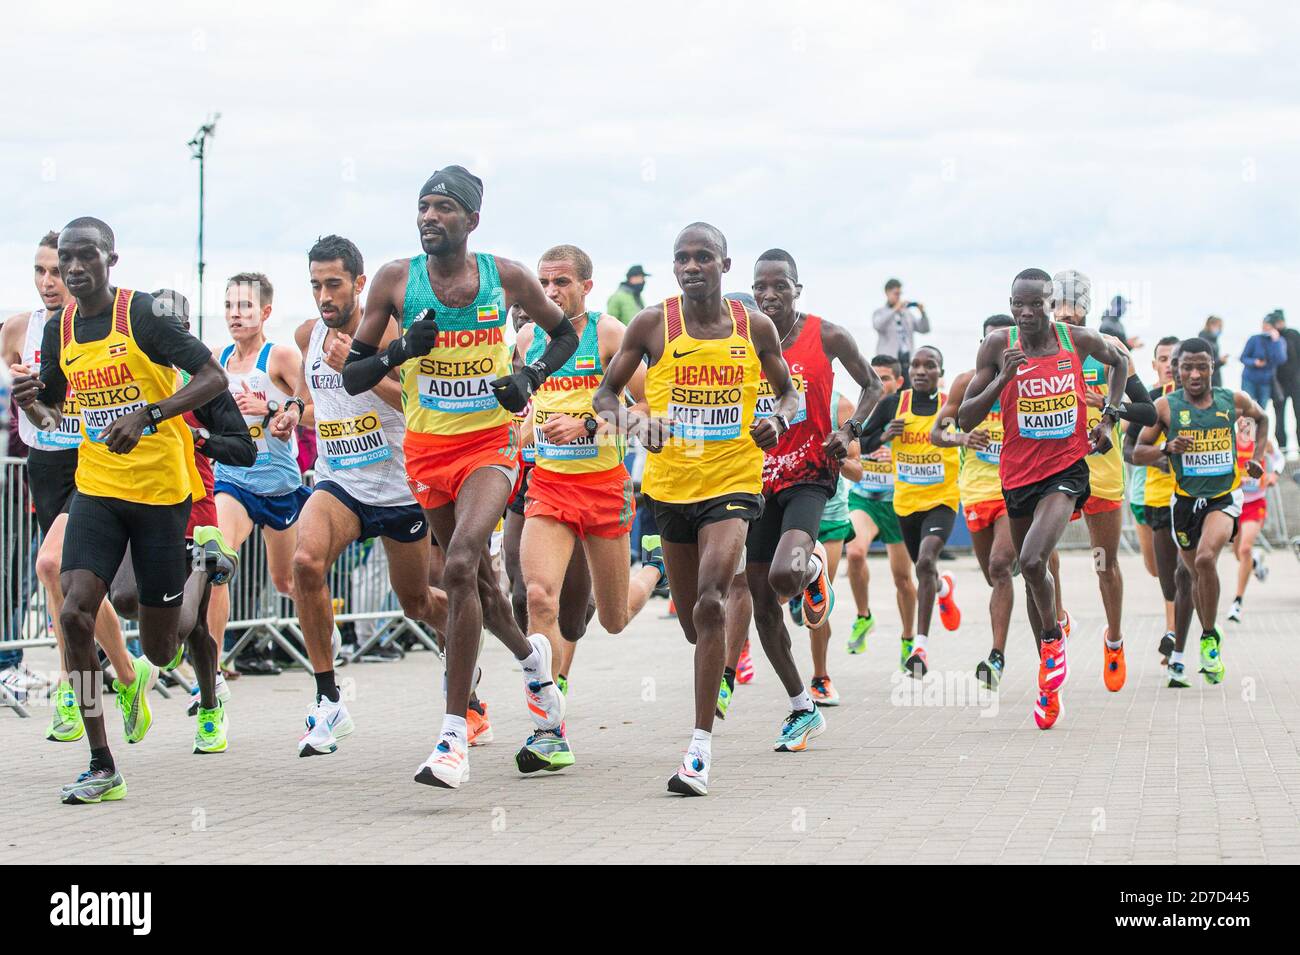 Joshua Cheptegei dell'Uganda, Guye Idemo Adola dell'Etiopia, Jacob Kiplimo dell'Uganda, Kibiwott Kandie del Kenya in azione durante i Campionati Mondiali di Mezza Maratona IAAF del 2020 a Gdynia. Foto Stock